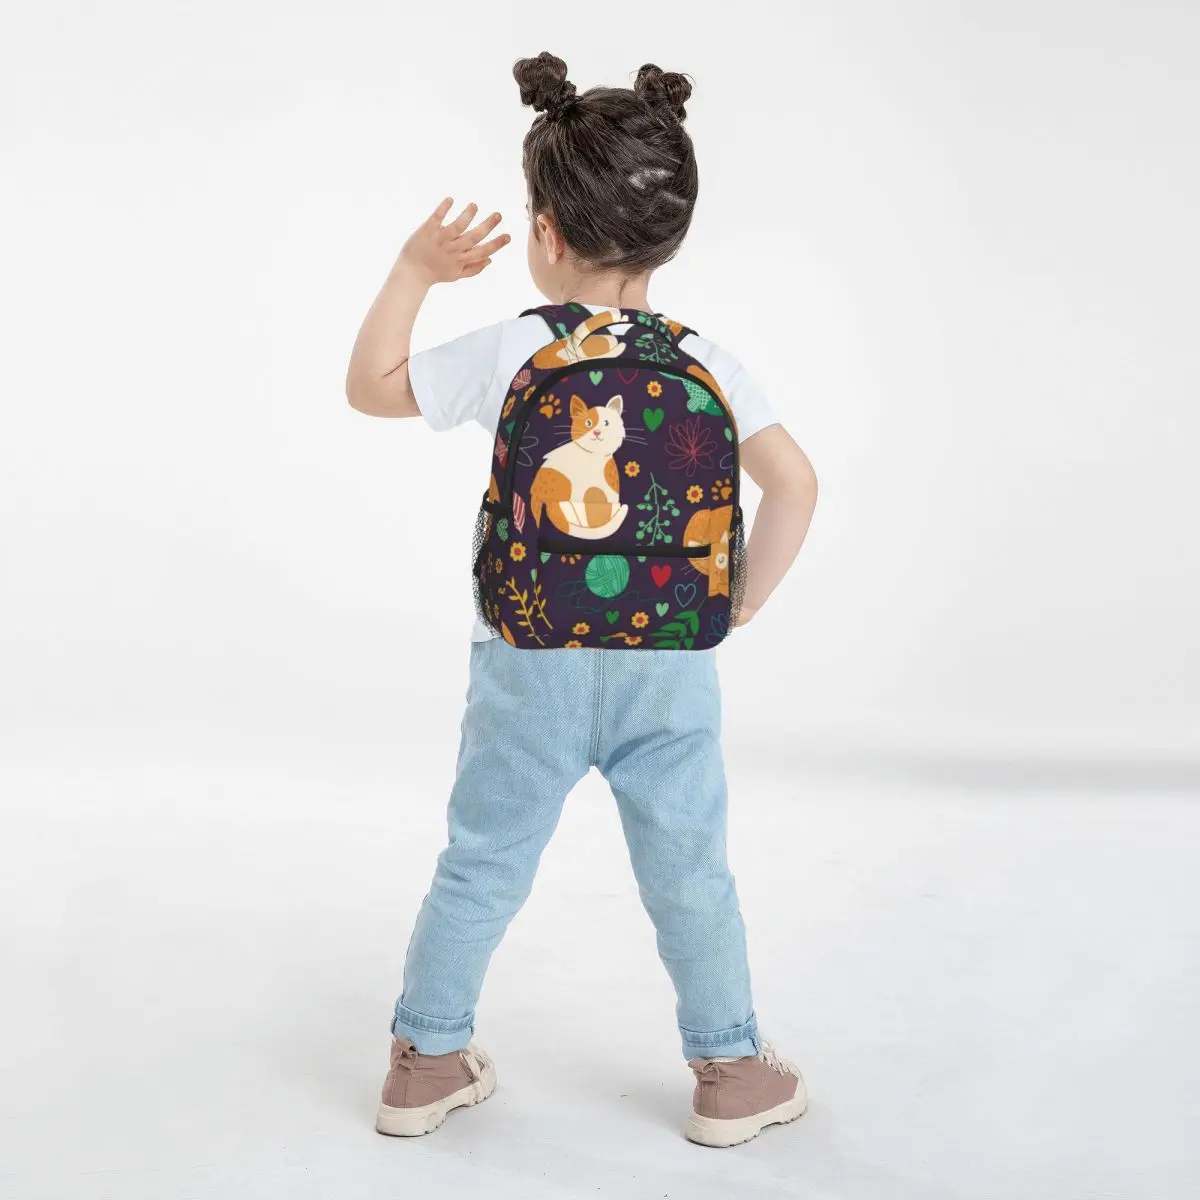 

Cute Backpacks for 4-6 Girls Little Child Kindergarten School Bag for Todder Kids Baby Lovely Casual Daypacks Travelling Bags